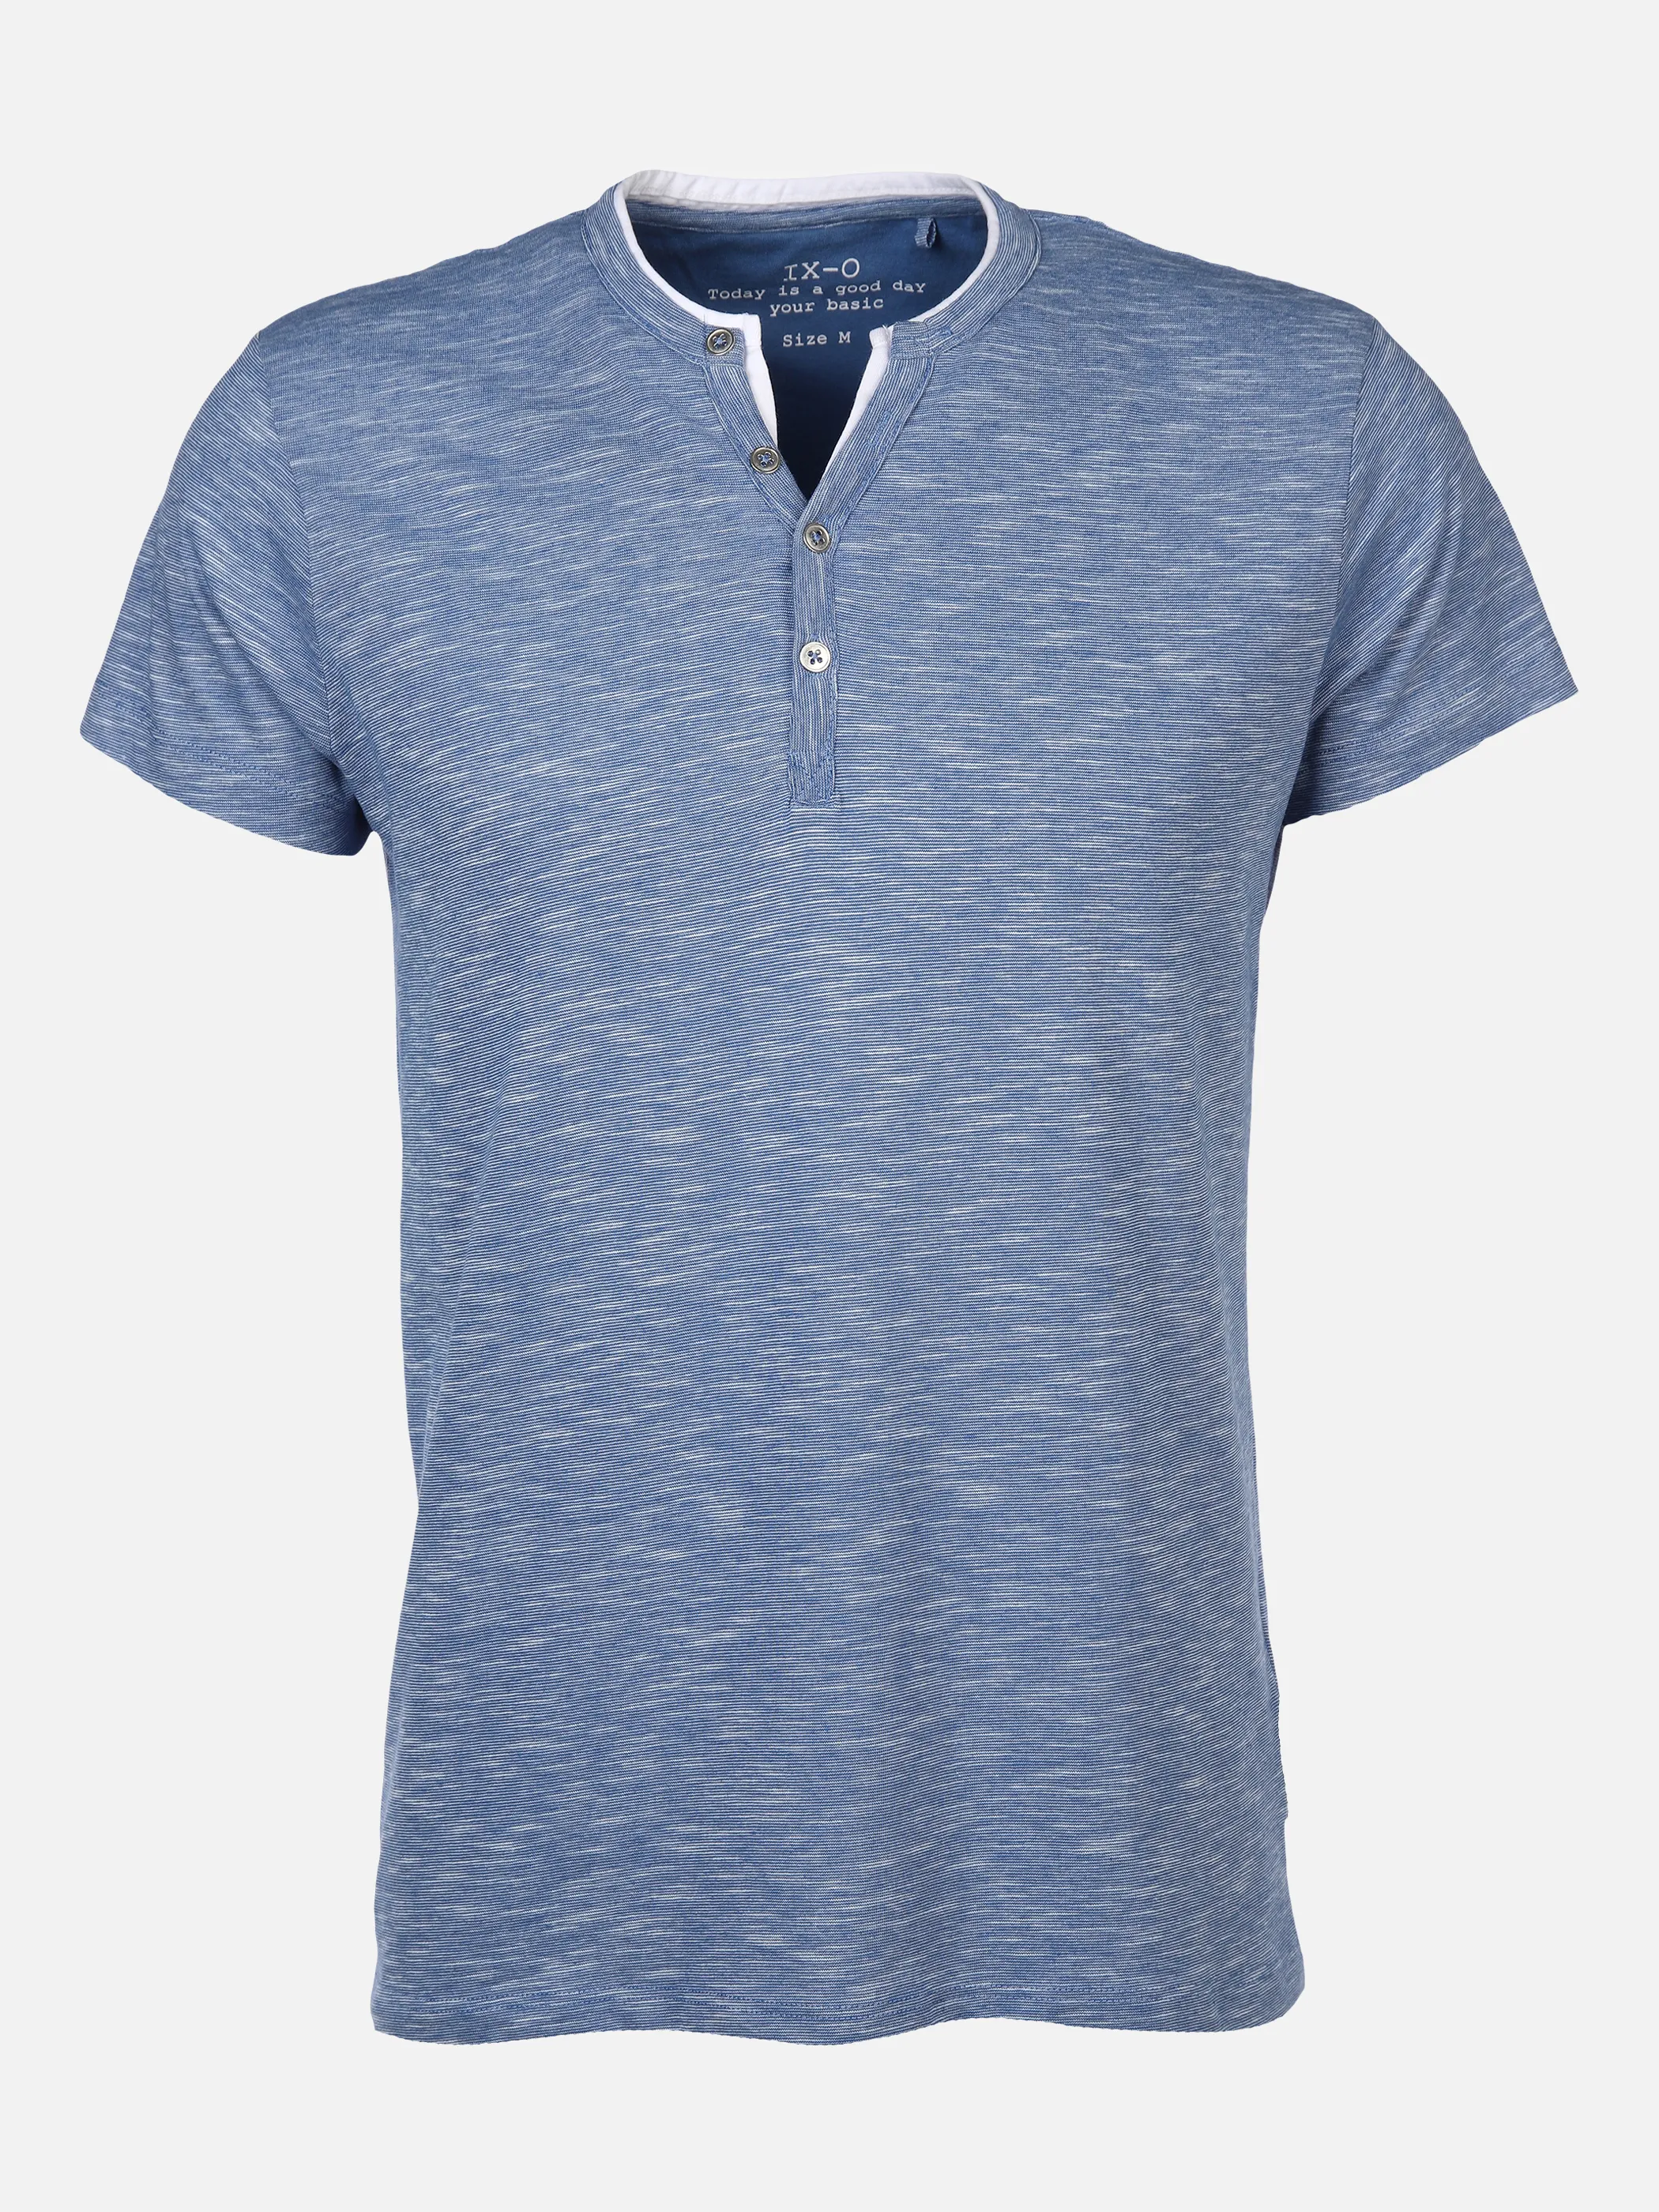 IX-O YF-He-T-Shirt, Serafino Blau 873742 MID BLUE 1